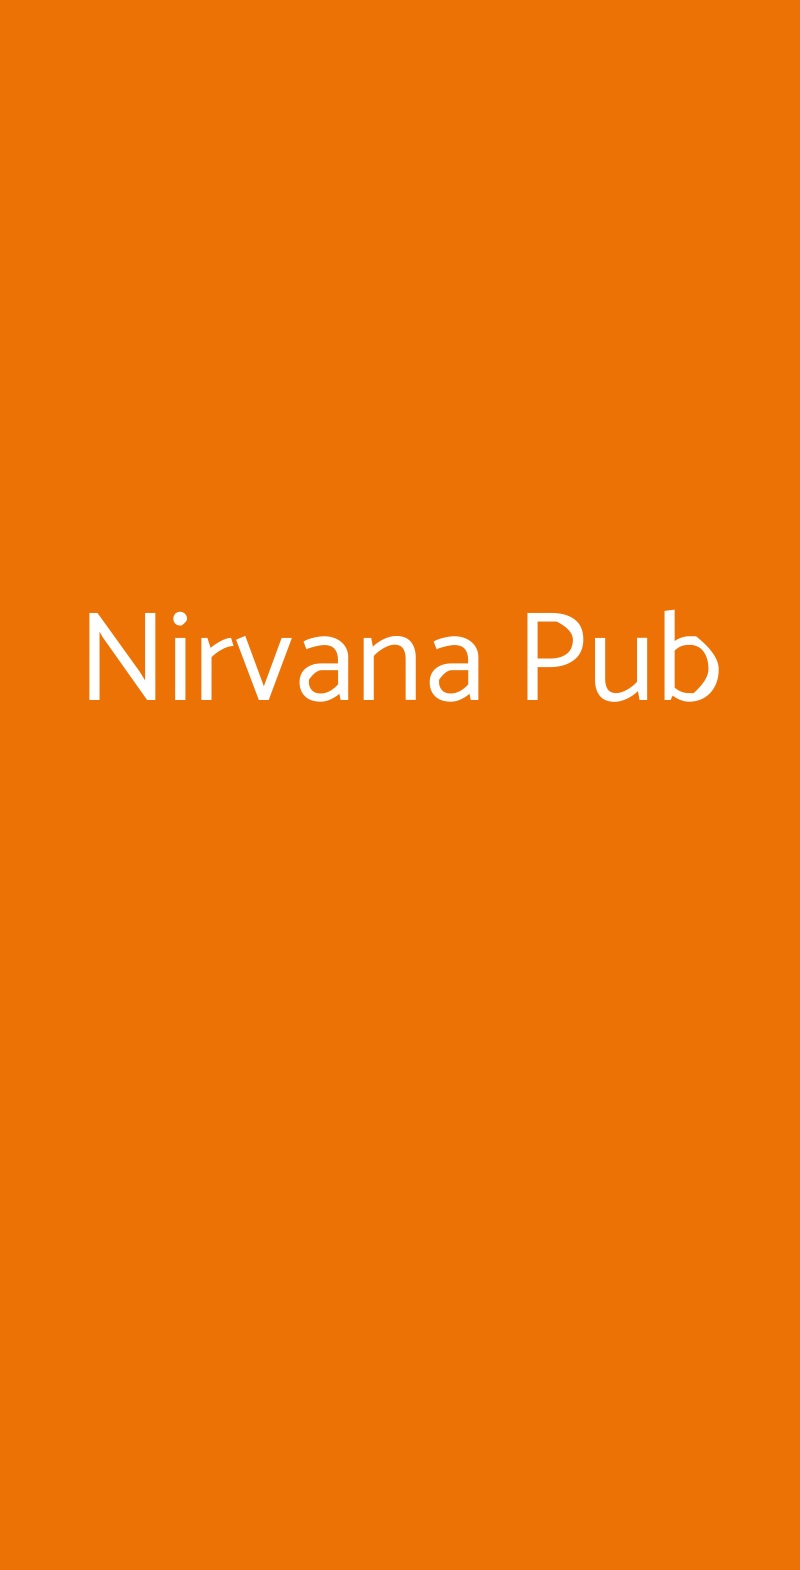 Nirvana Pub Monza menù 1 pagina